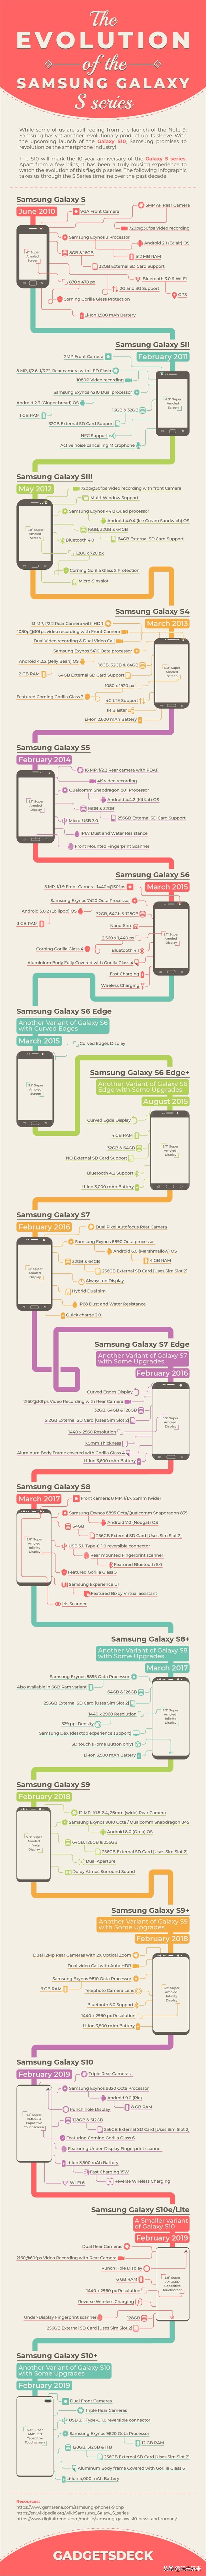 一图看懂三星Galaxy S系列产品型号发展史